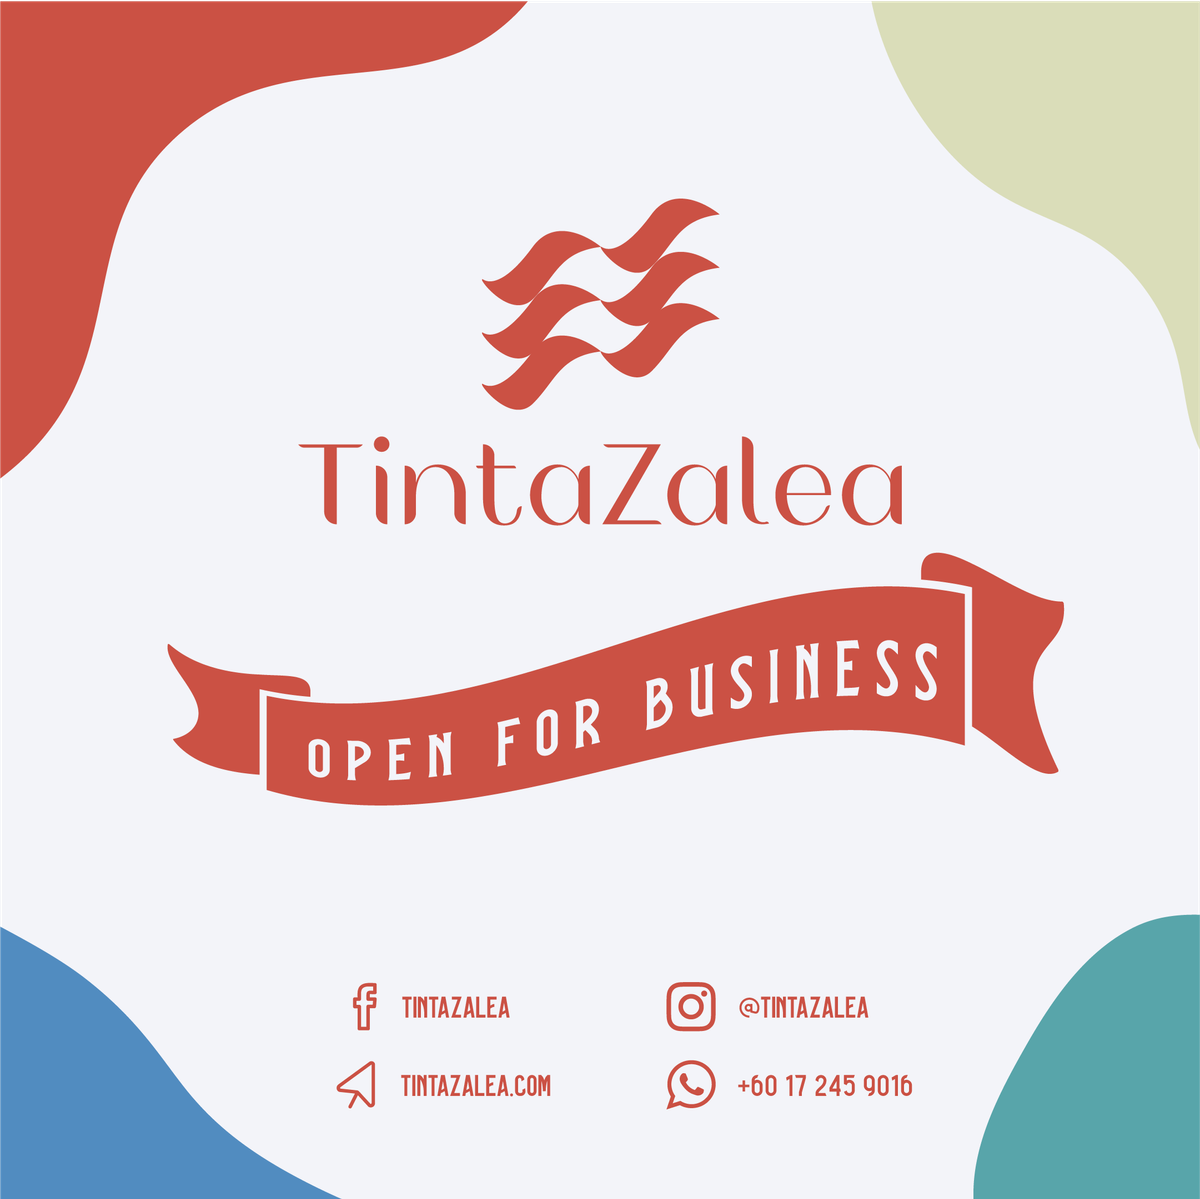 TintaZalea has Launched!